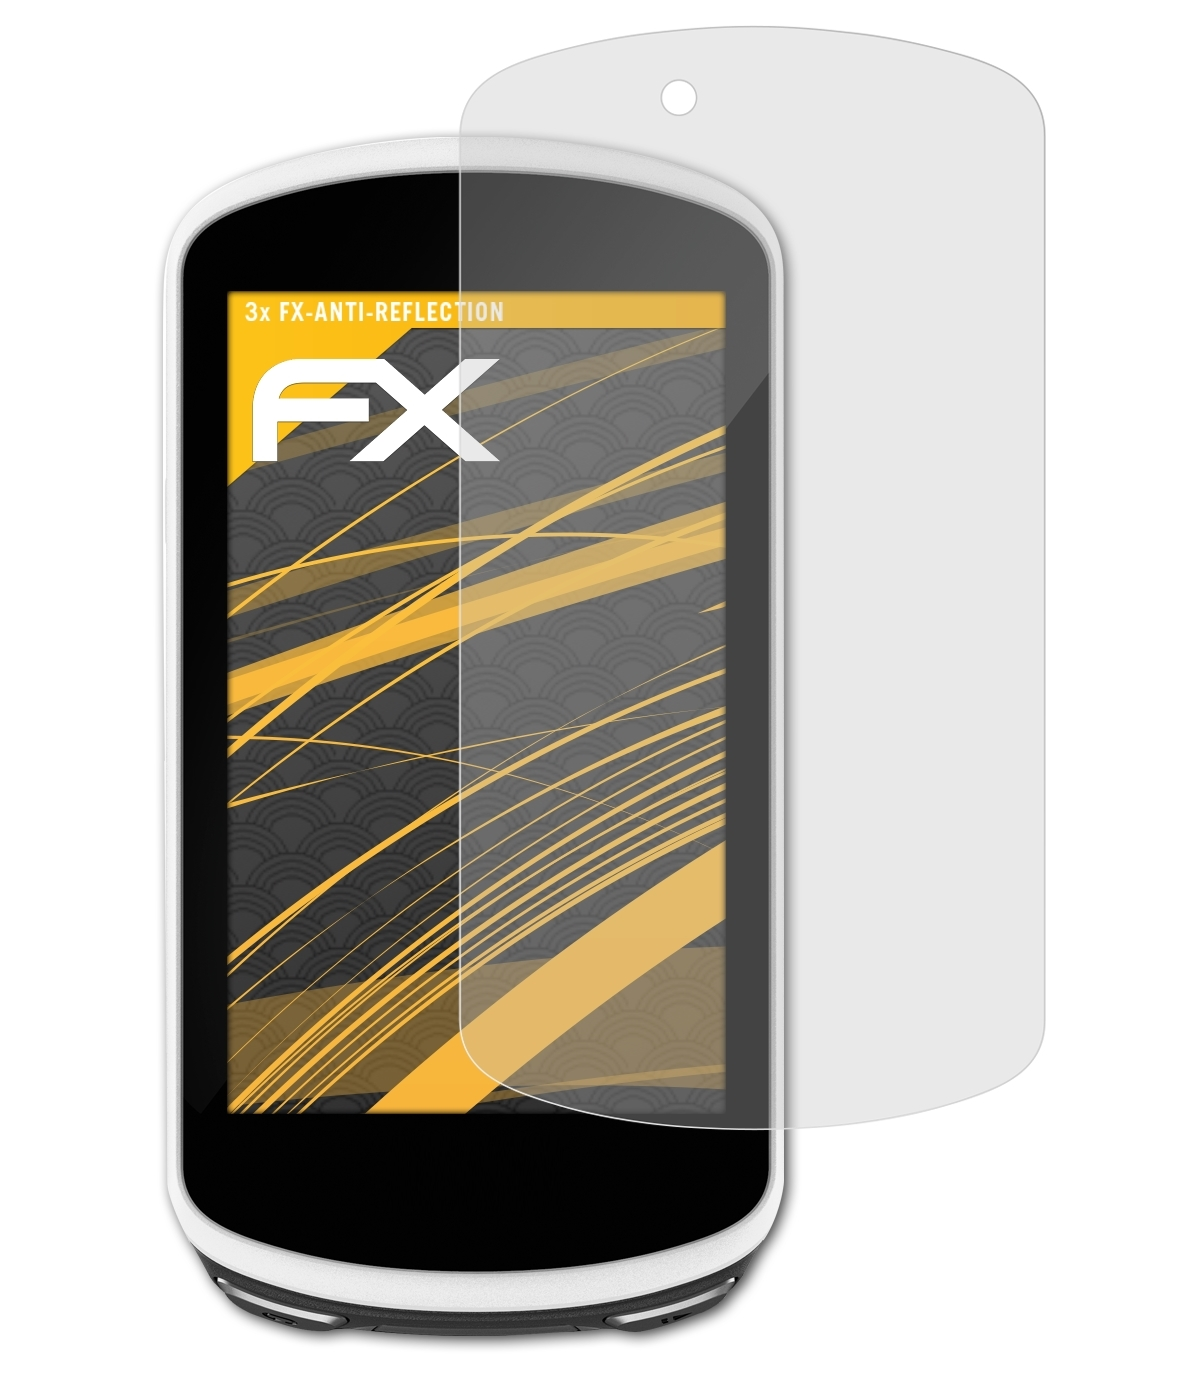 ATFOLIX 3x Garmin Edge 1030) Displayschutz(für FX-Antireflex